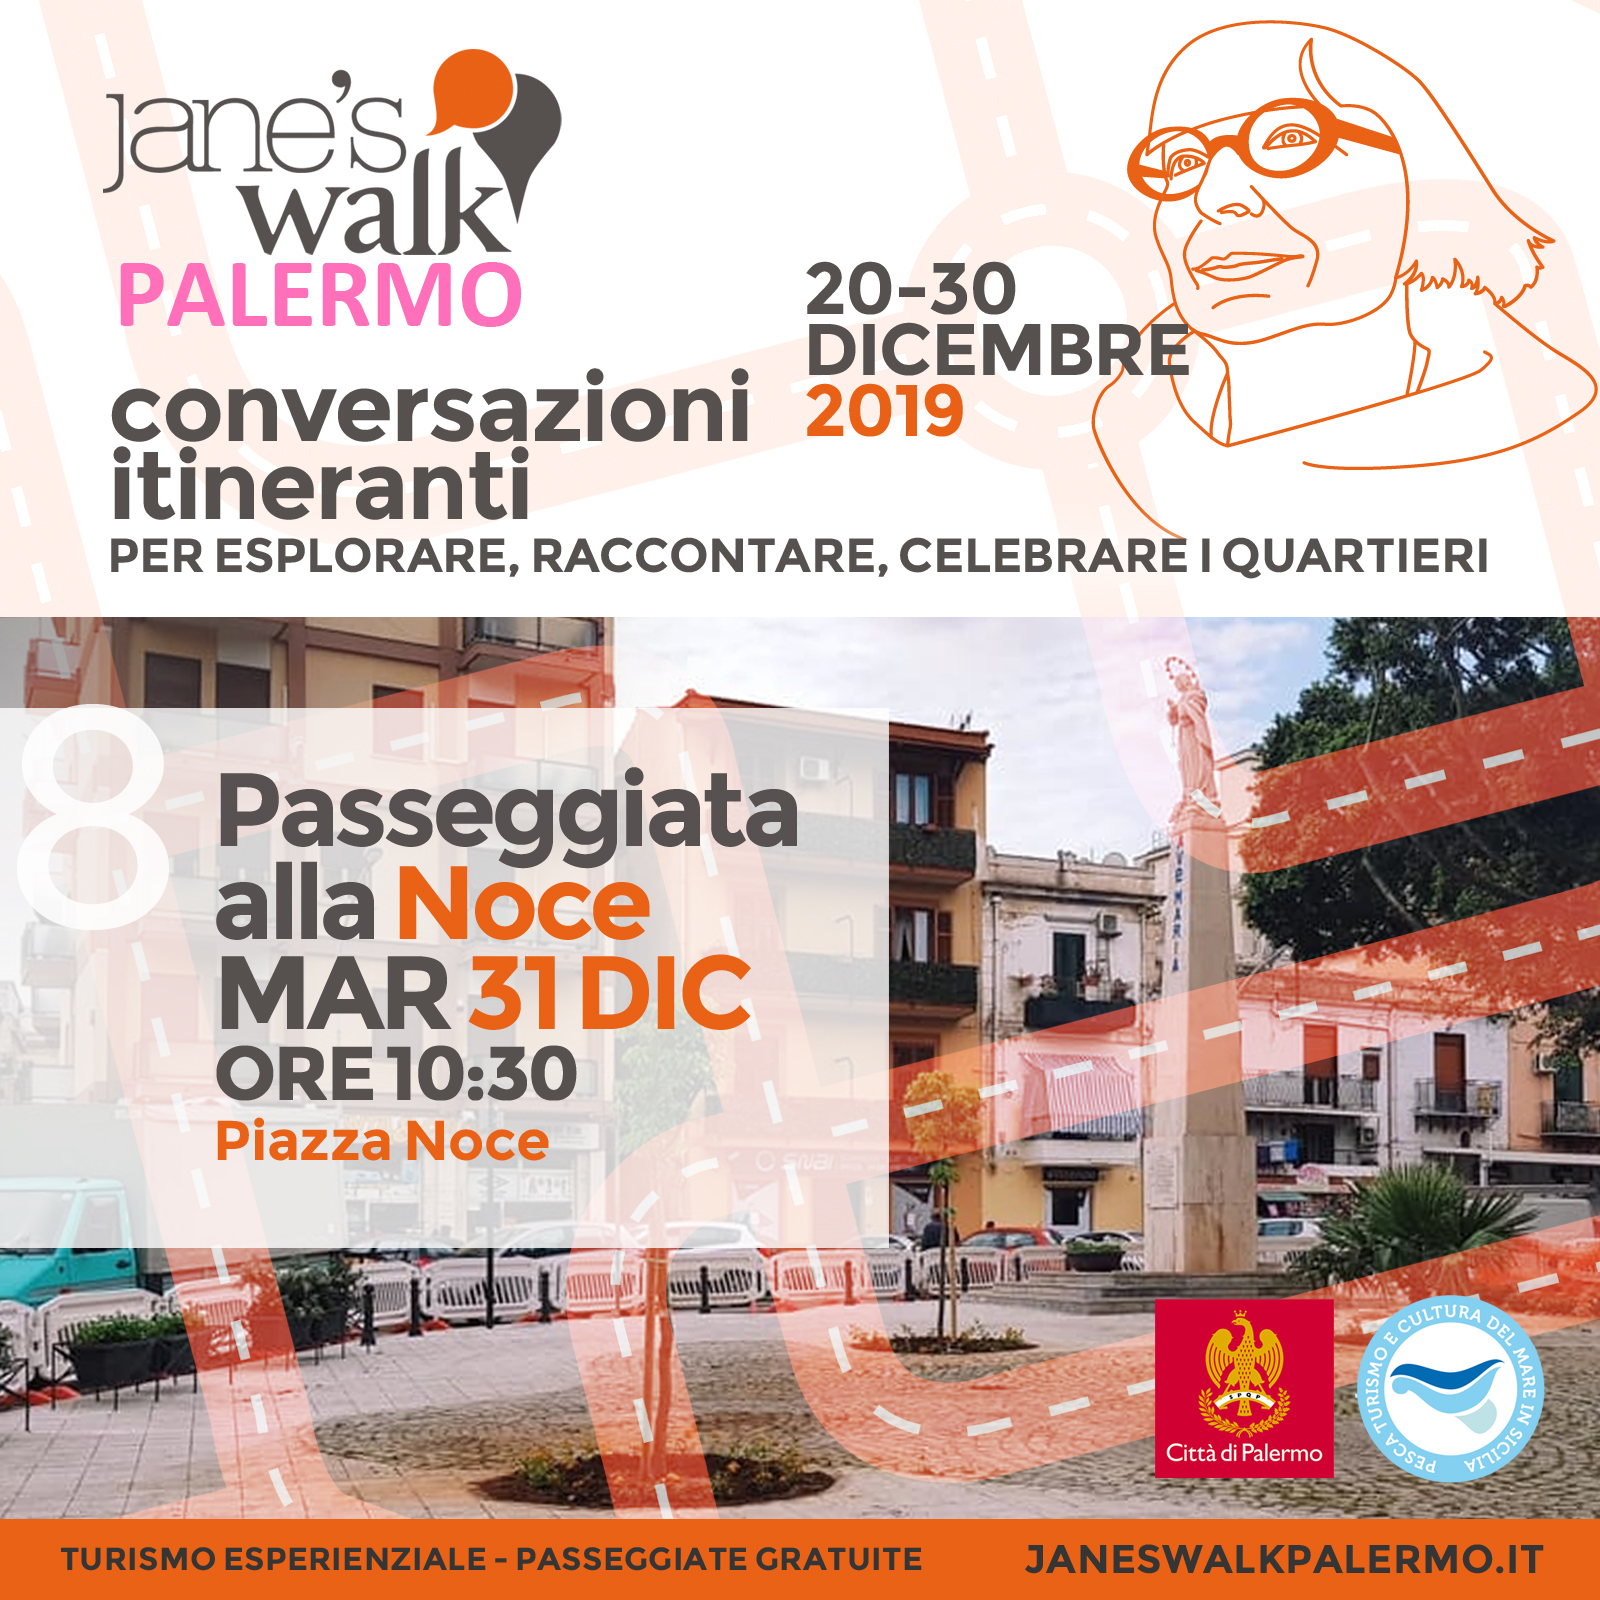 Jane's Walk Palermo - Passeggiata alla Noce